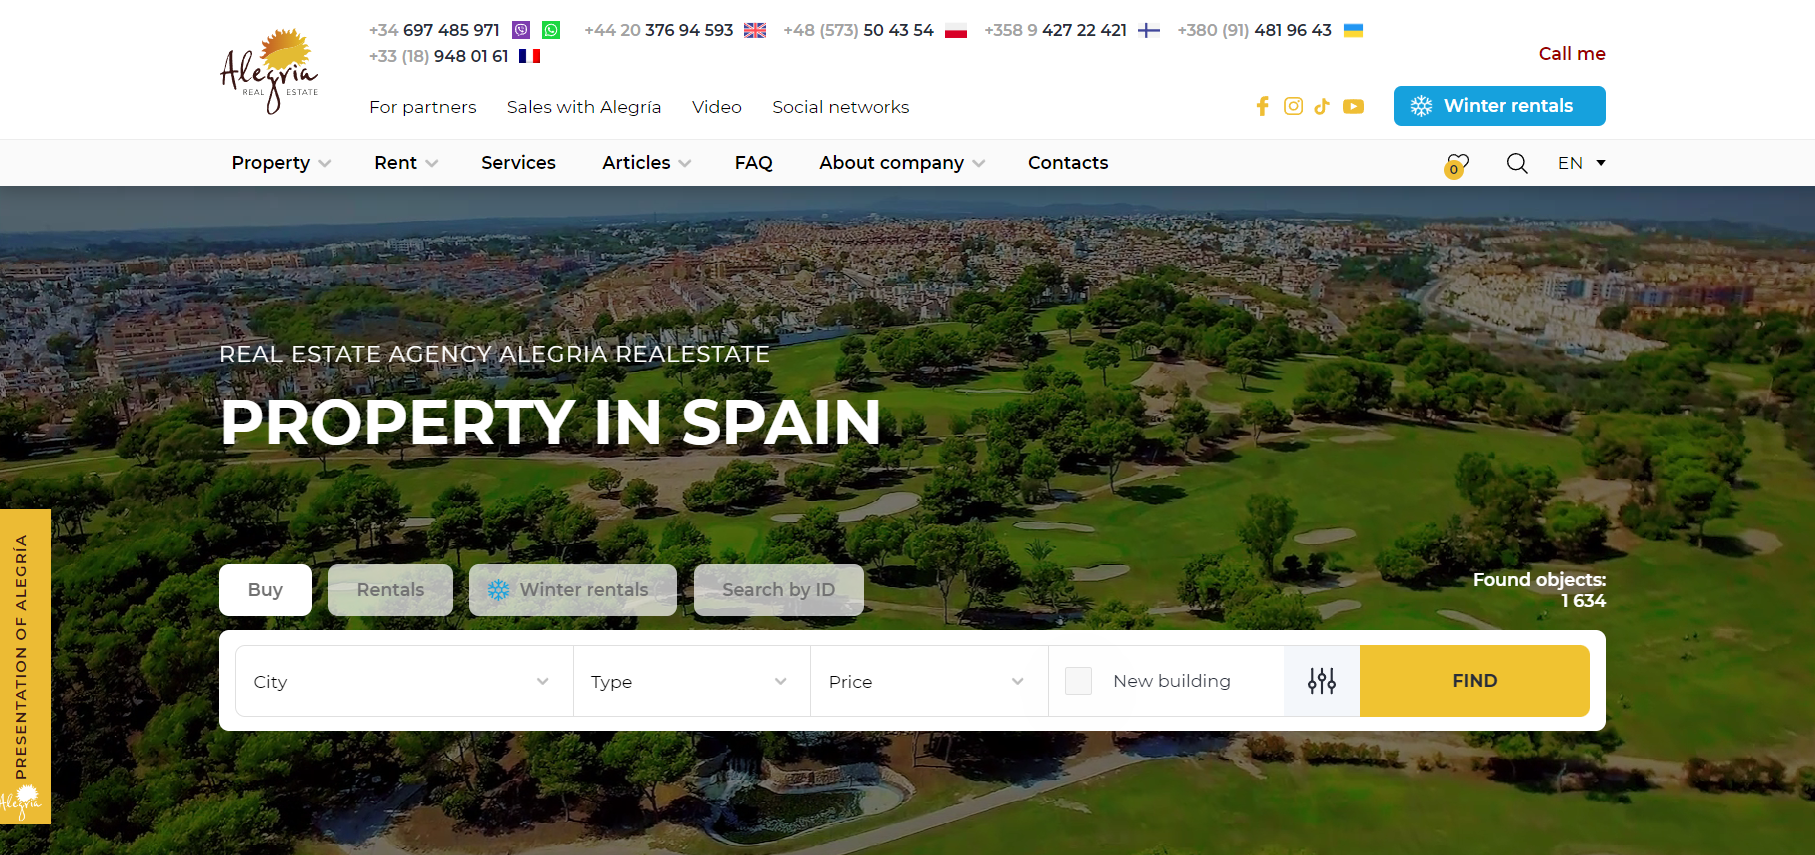 Реальные проблемы: Опыт клиента с агентством недвижимости Alegria в Испании